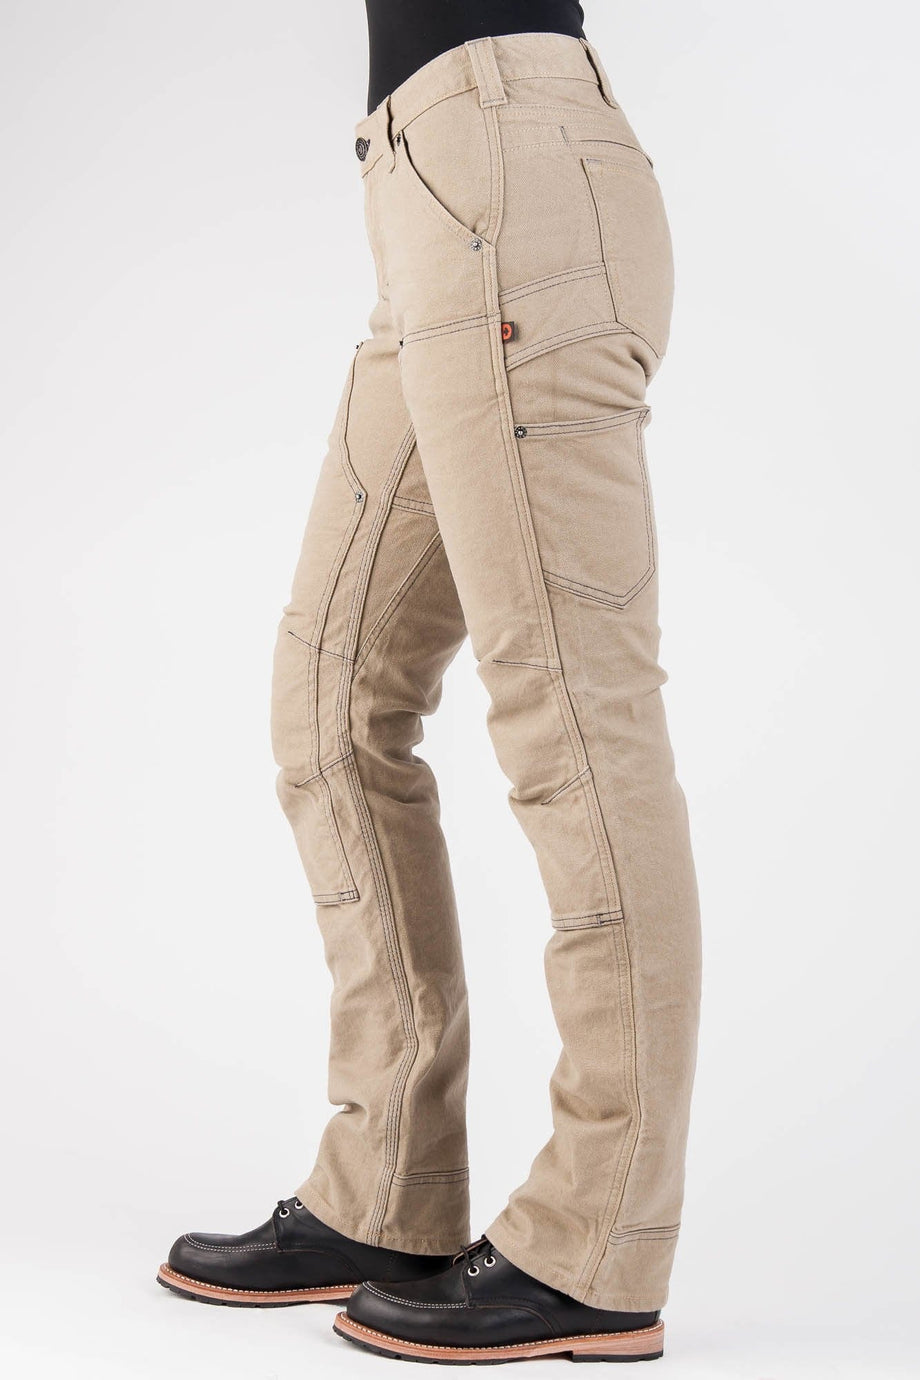 BC Textile Innovations - Ladies Work Pants, Pants Ladies, Ladies Pants